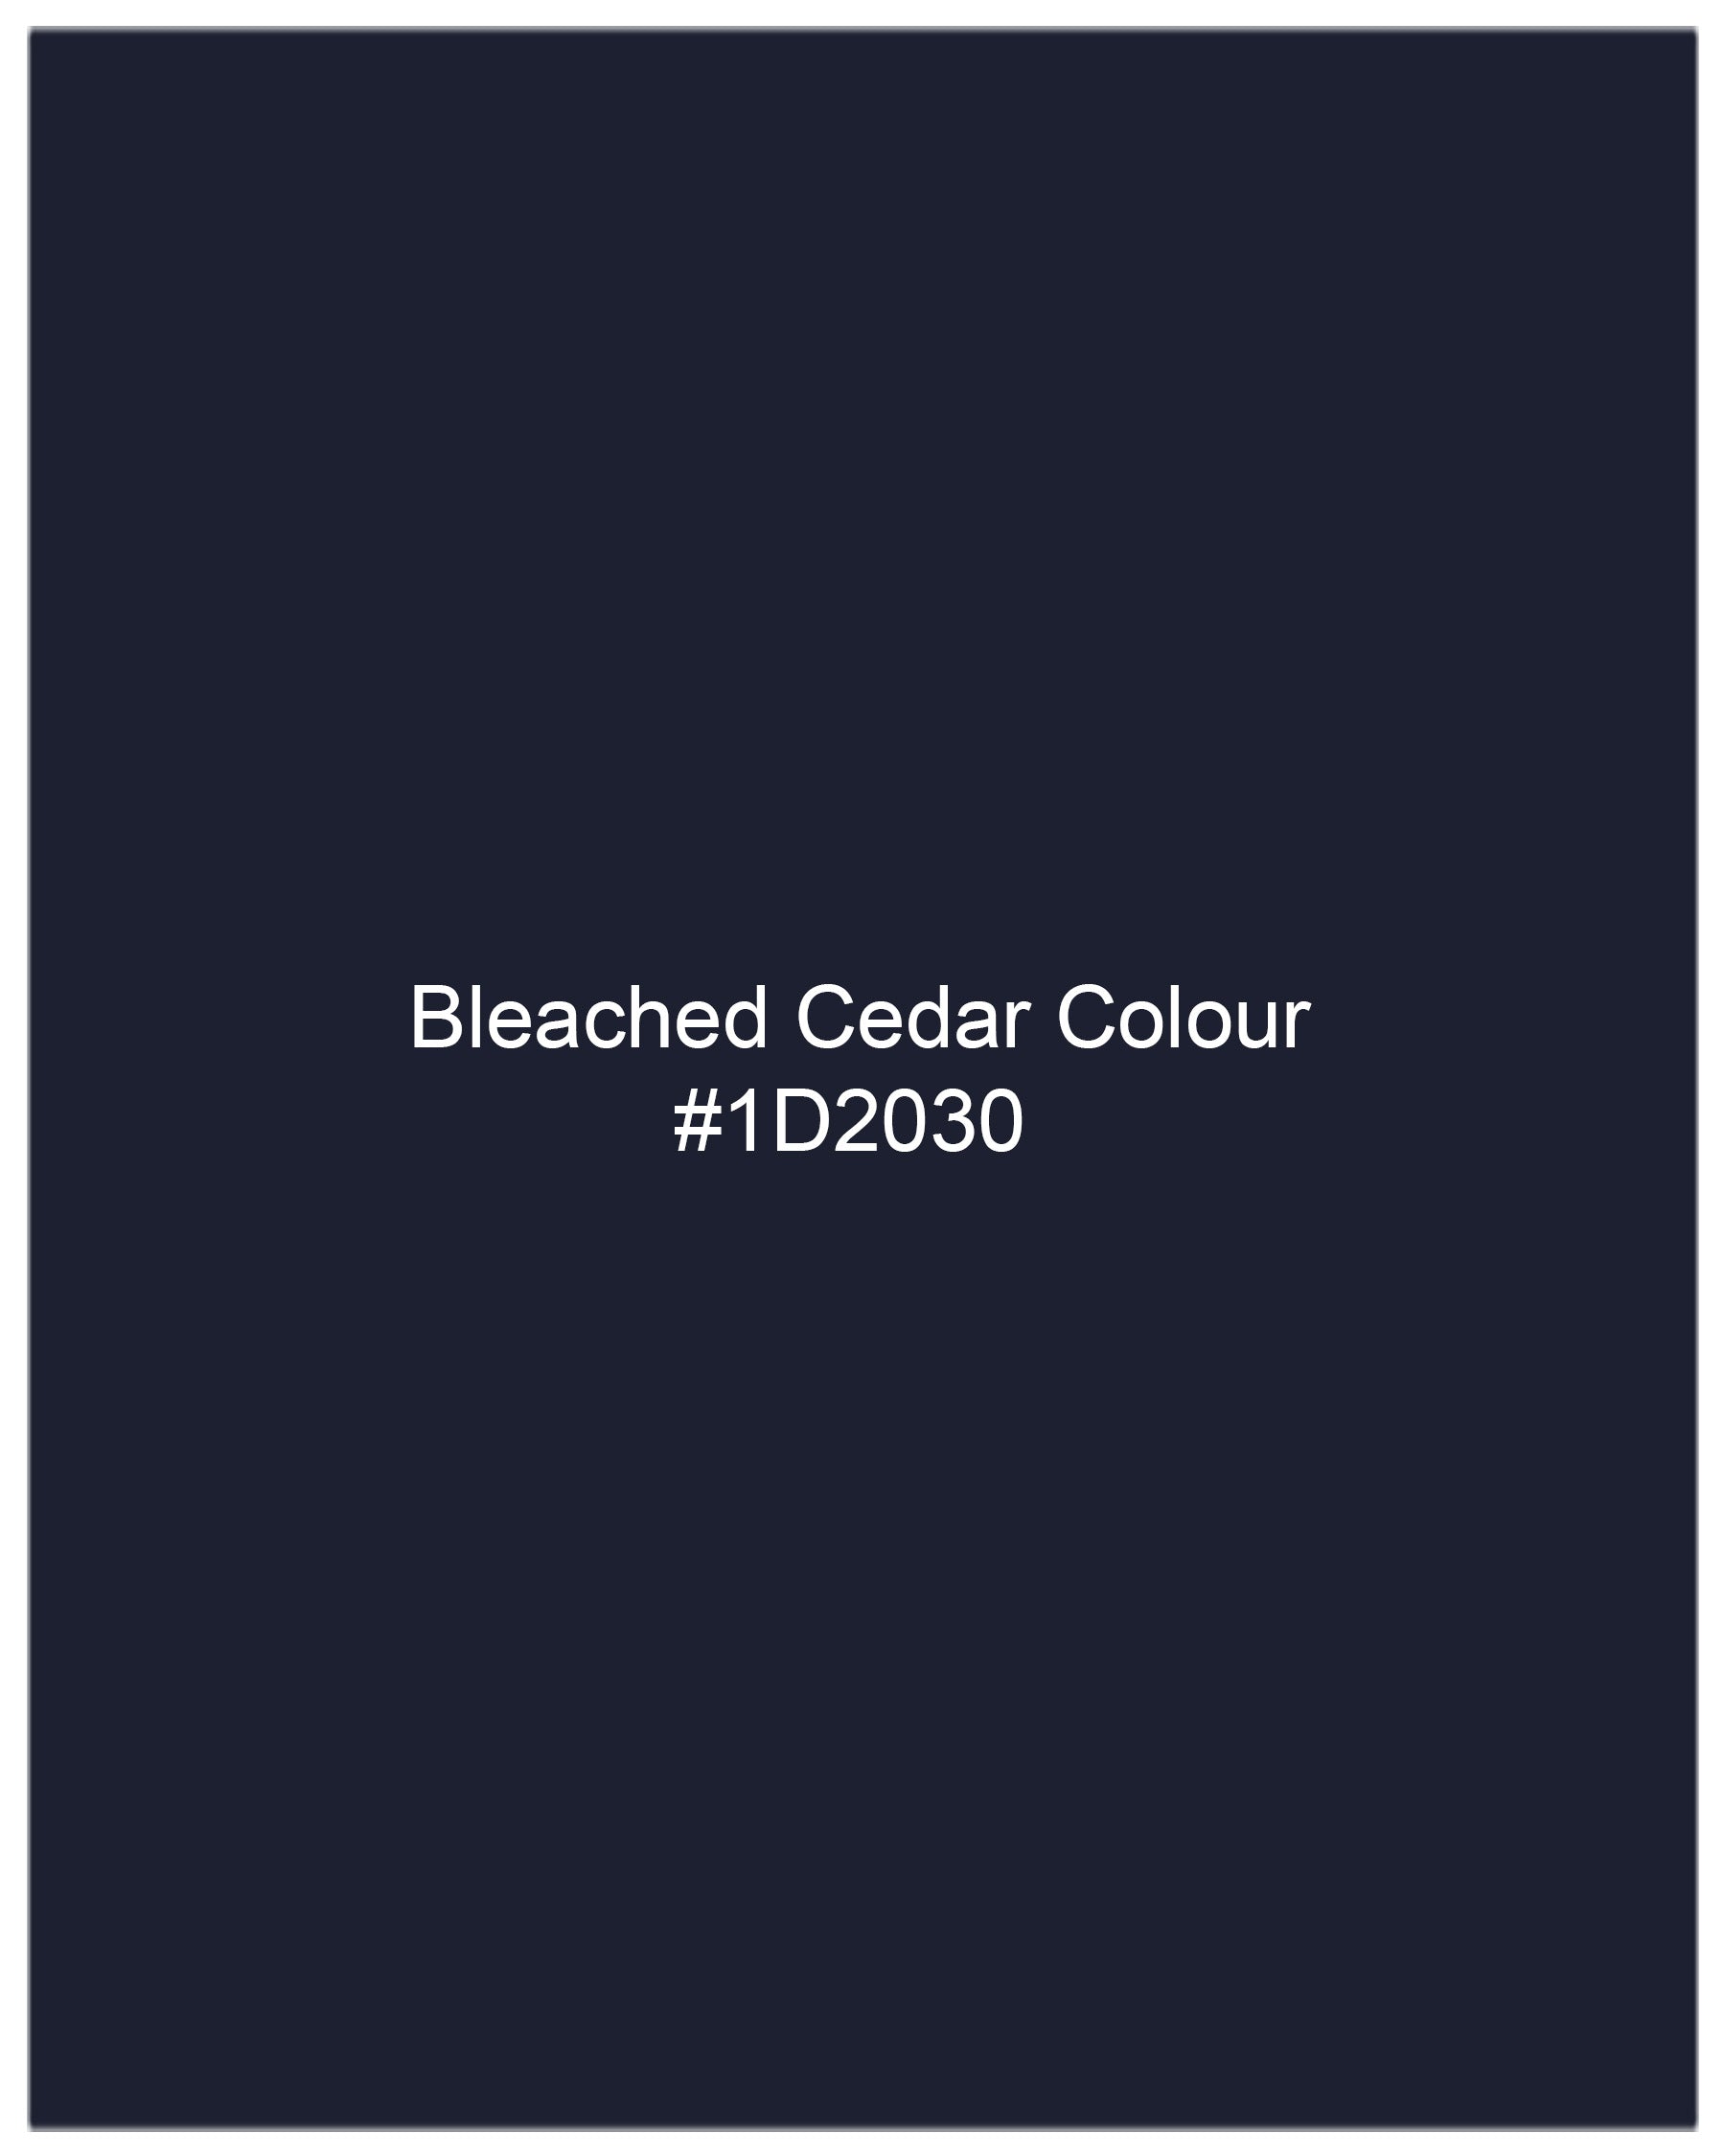 Bleached Cedar Navy Blue Luxurious Linen Shirt 7744-BD-BLE-38, 7744-BD-BLE-H-38, 7744-BD-BLE-39,7744-BD-BLE-H-39, 7744-BD-BLE-40, 7744-BD-BLE-H-40, 7744-BD-BLE-42, 7744-BD-BLE-H-42, 7744-BD-BLE-44, 7744-BD-BLE-H-44, 7744-BD-BLE-46, 7744-BD-BLE-H-46, 7744-BD-BLE-48, 7744-BD-BLE-H-48, 7744-BD-BLE-50, 7744-BD-BLE-H-50, 7744-BD-BLE-52, 7744-BD-BLE-H-52